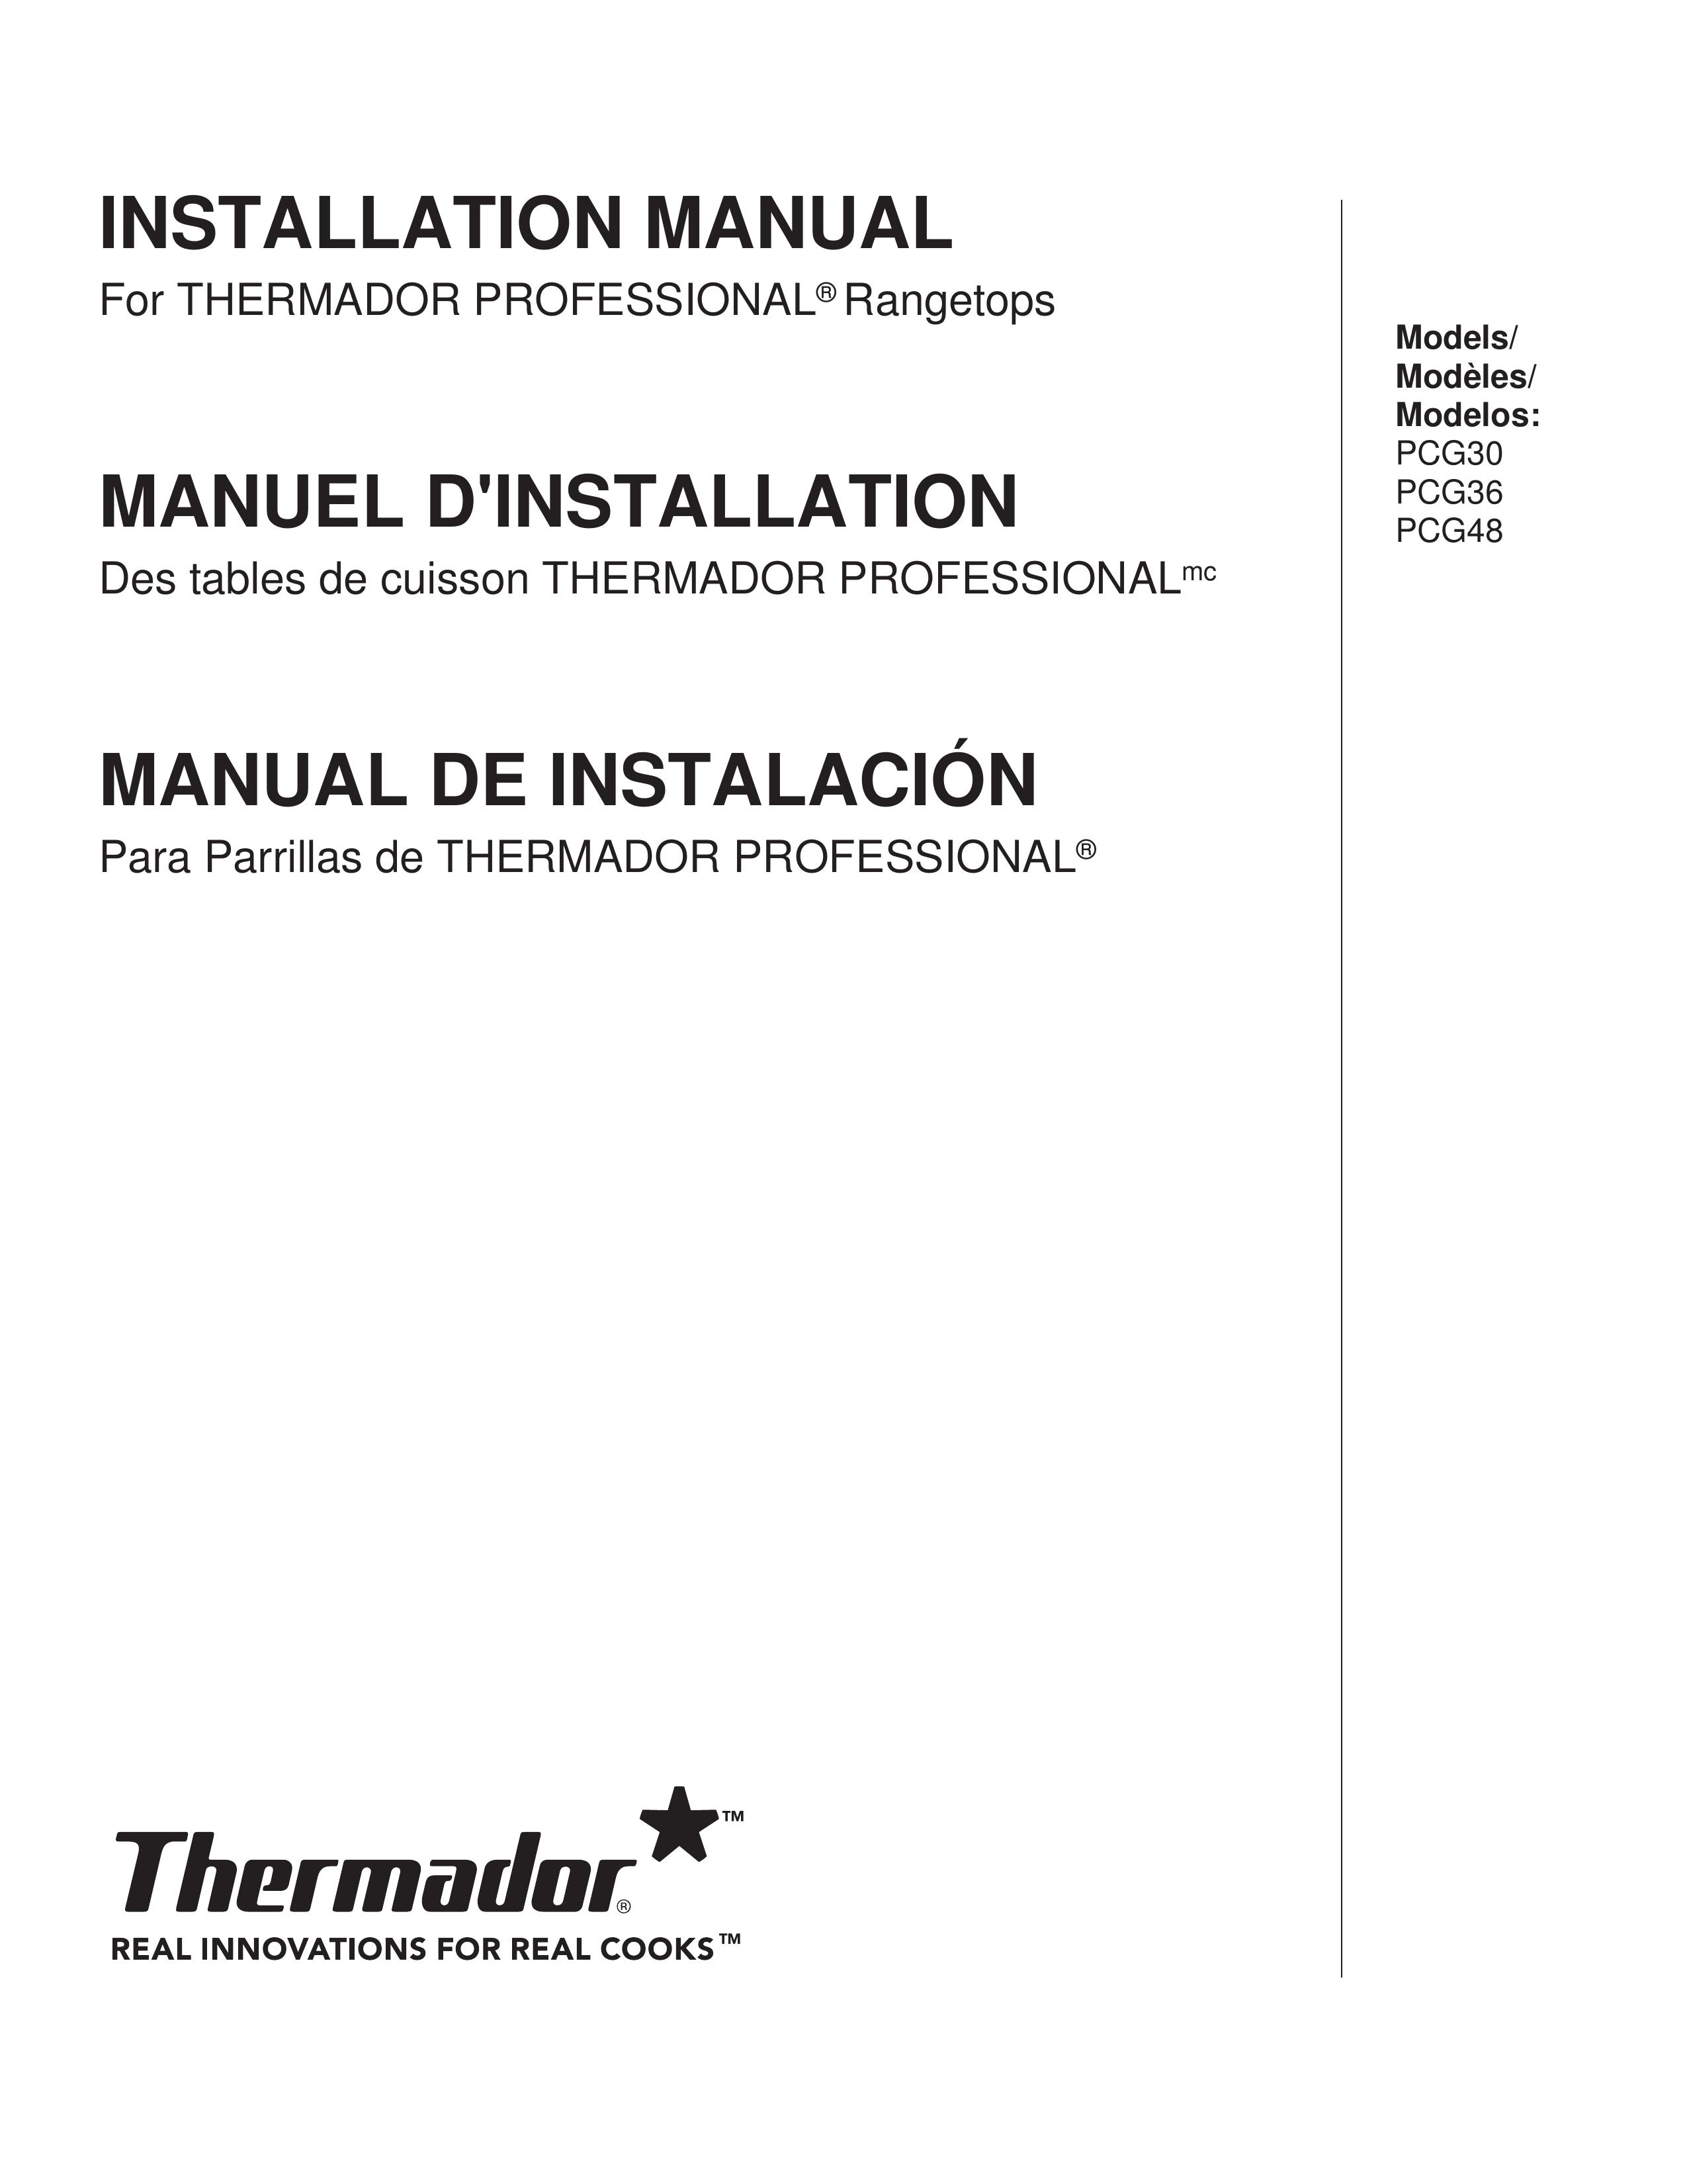 Thermador PCG36 Wok User Manual